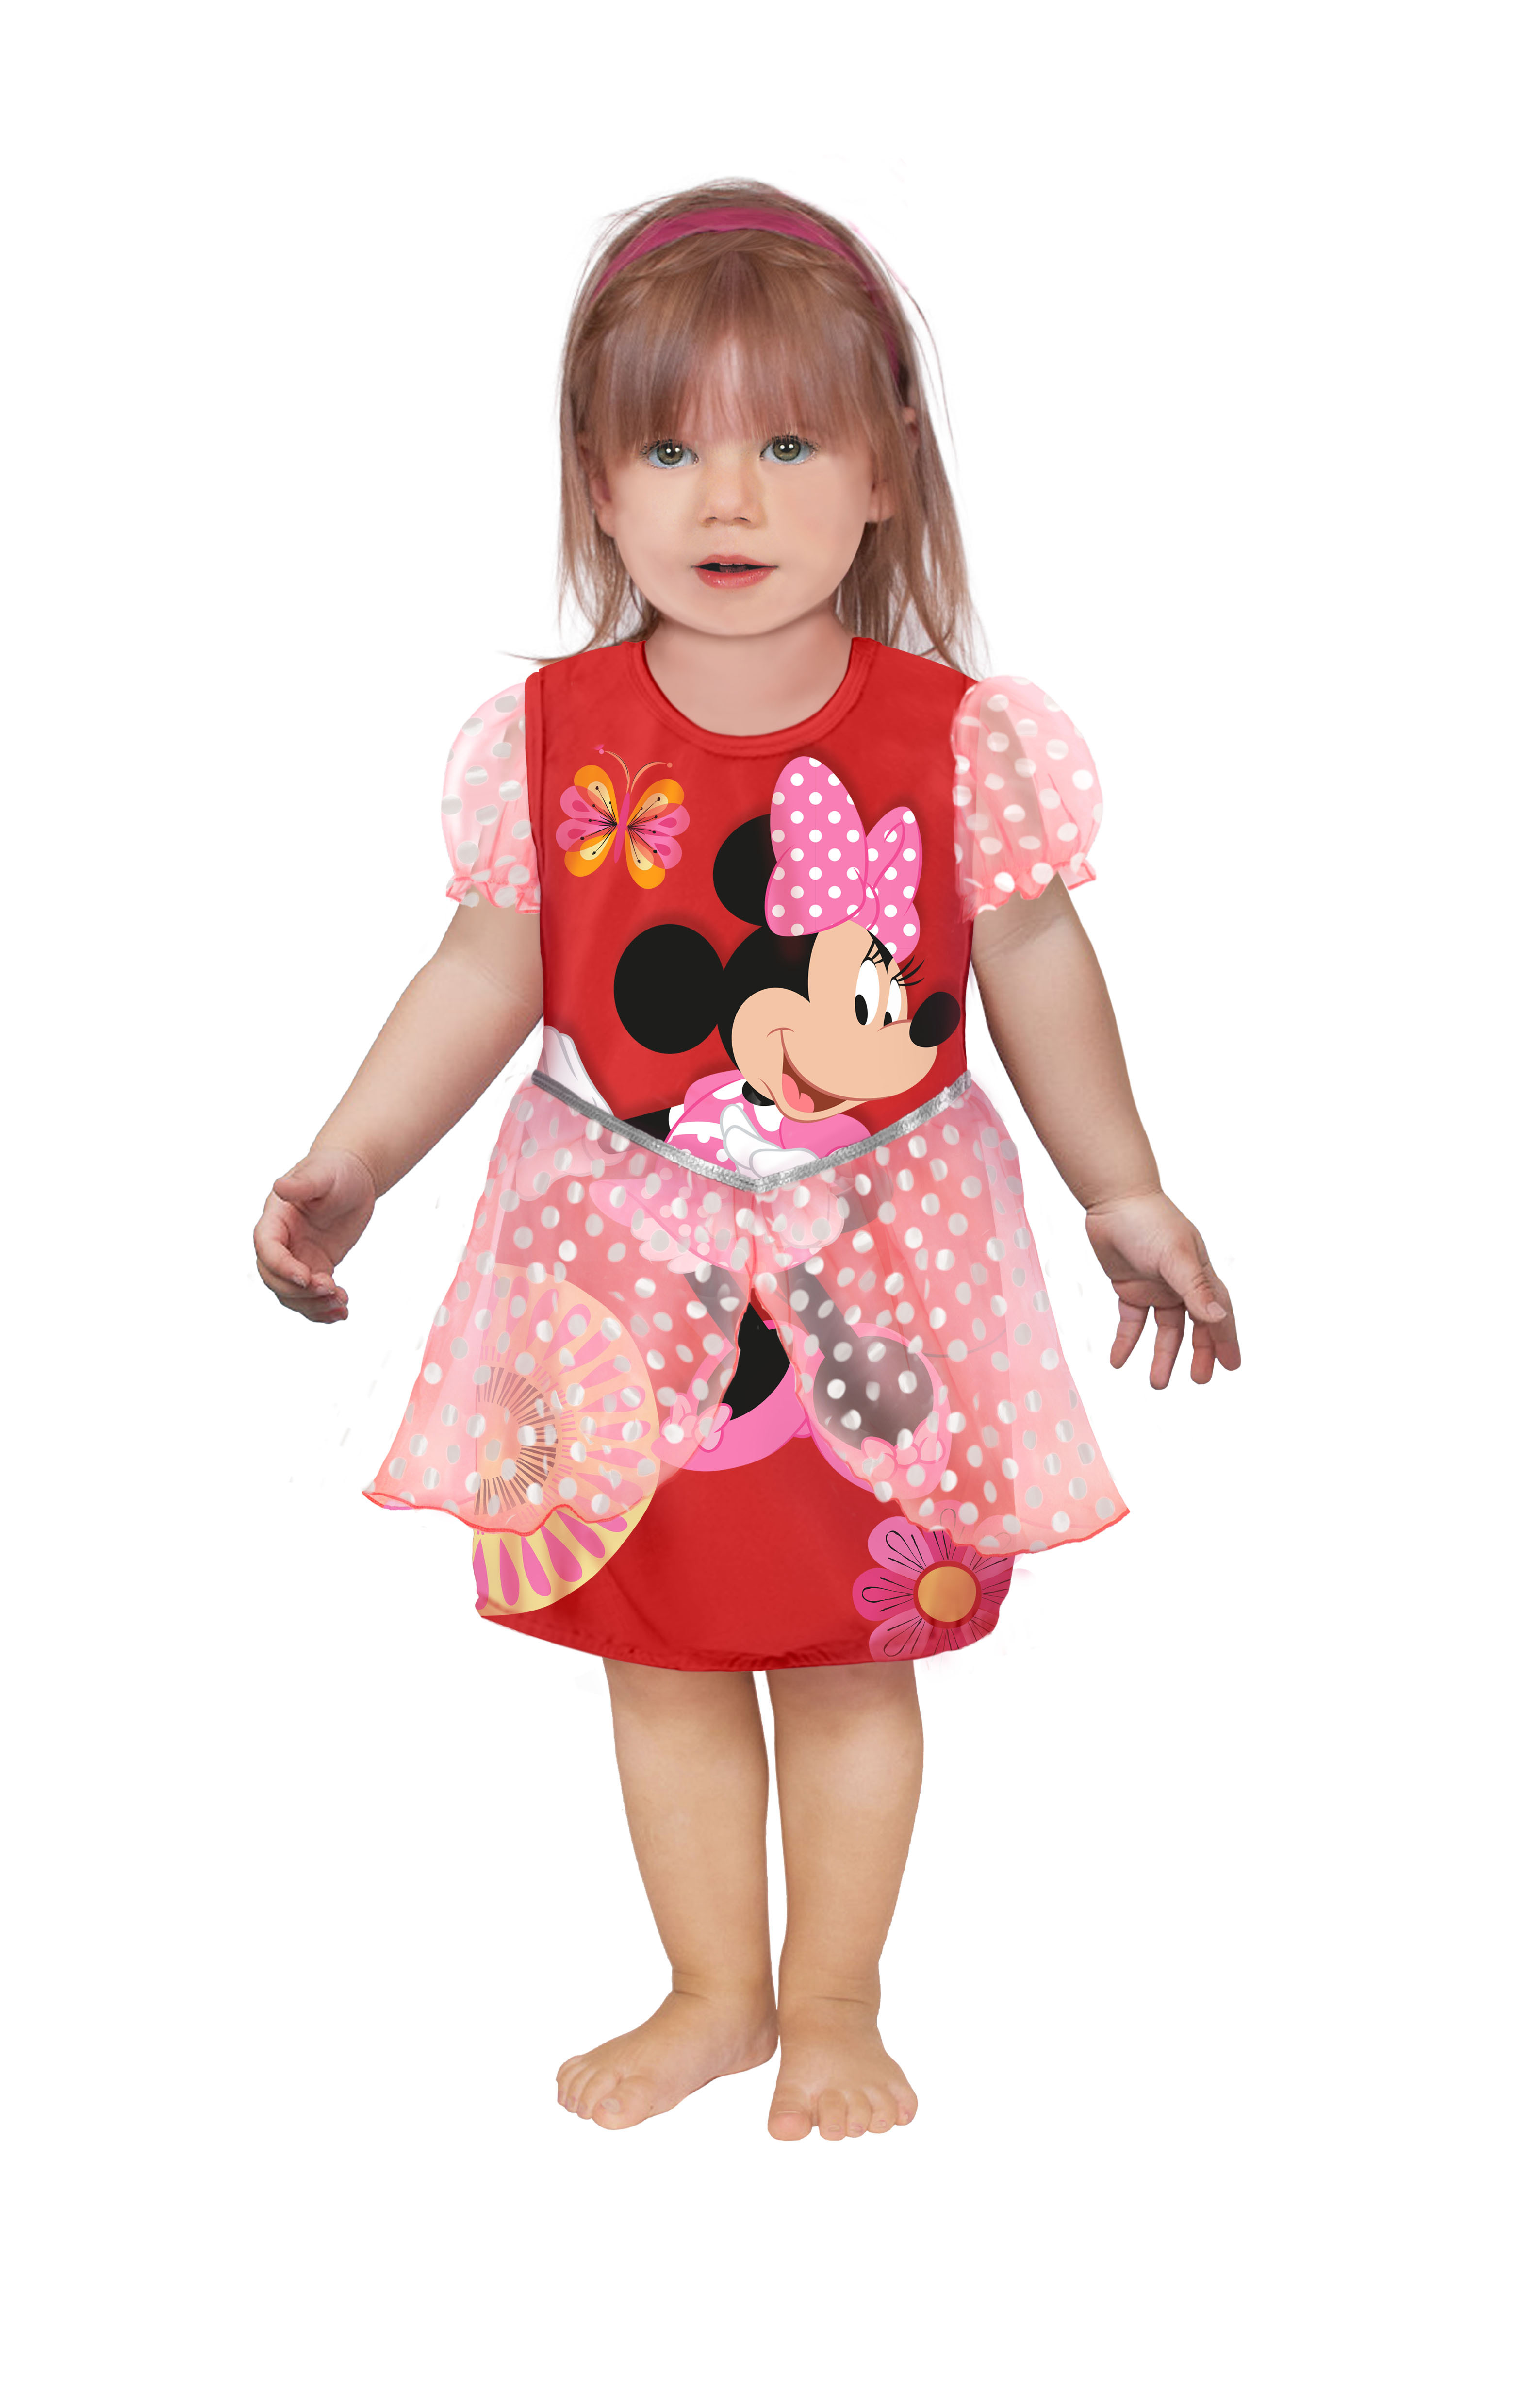 slijtage Verdienen Onveilig Koop Ciao - Baby Costume - Minnie Mouse (68 cm) (11249.12-18) - Red - 68